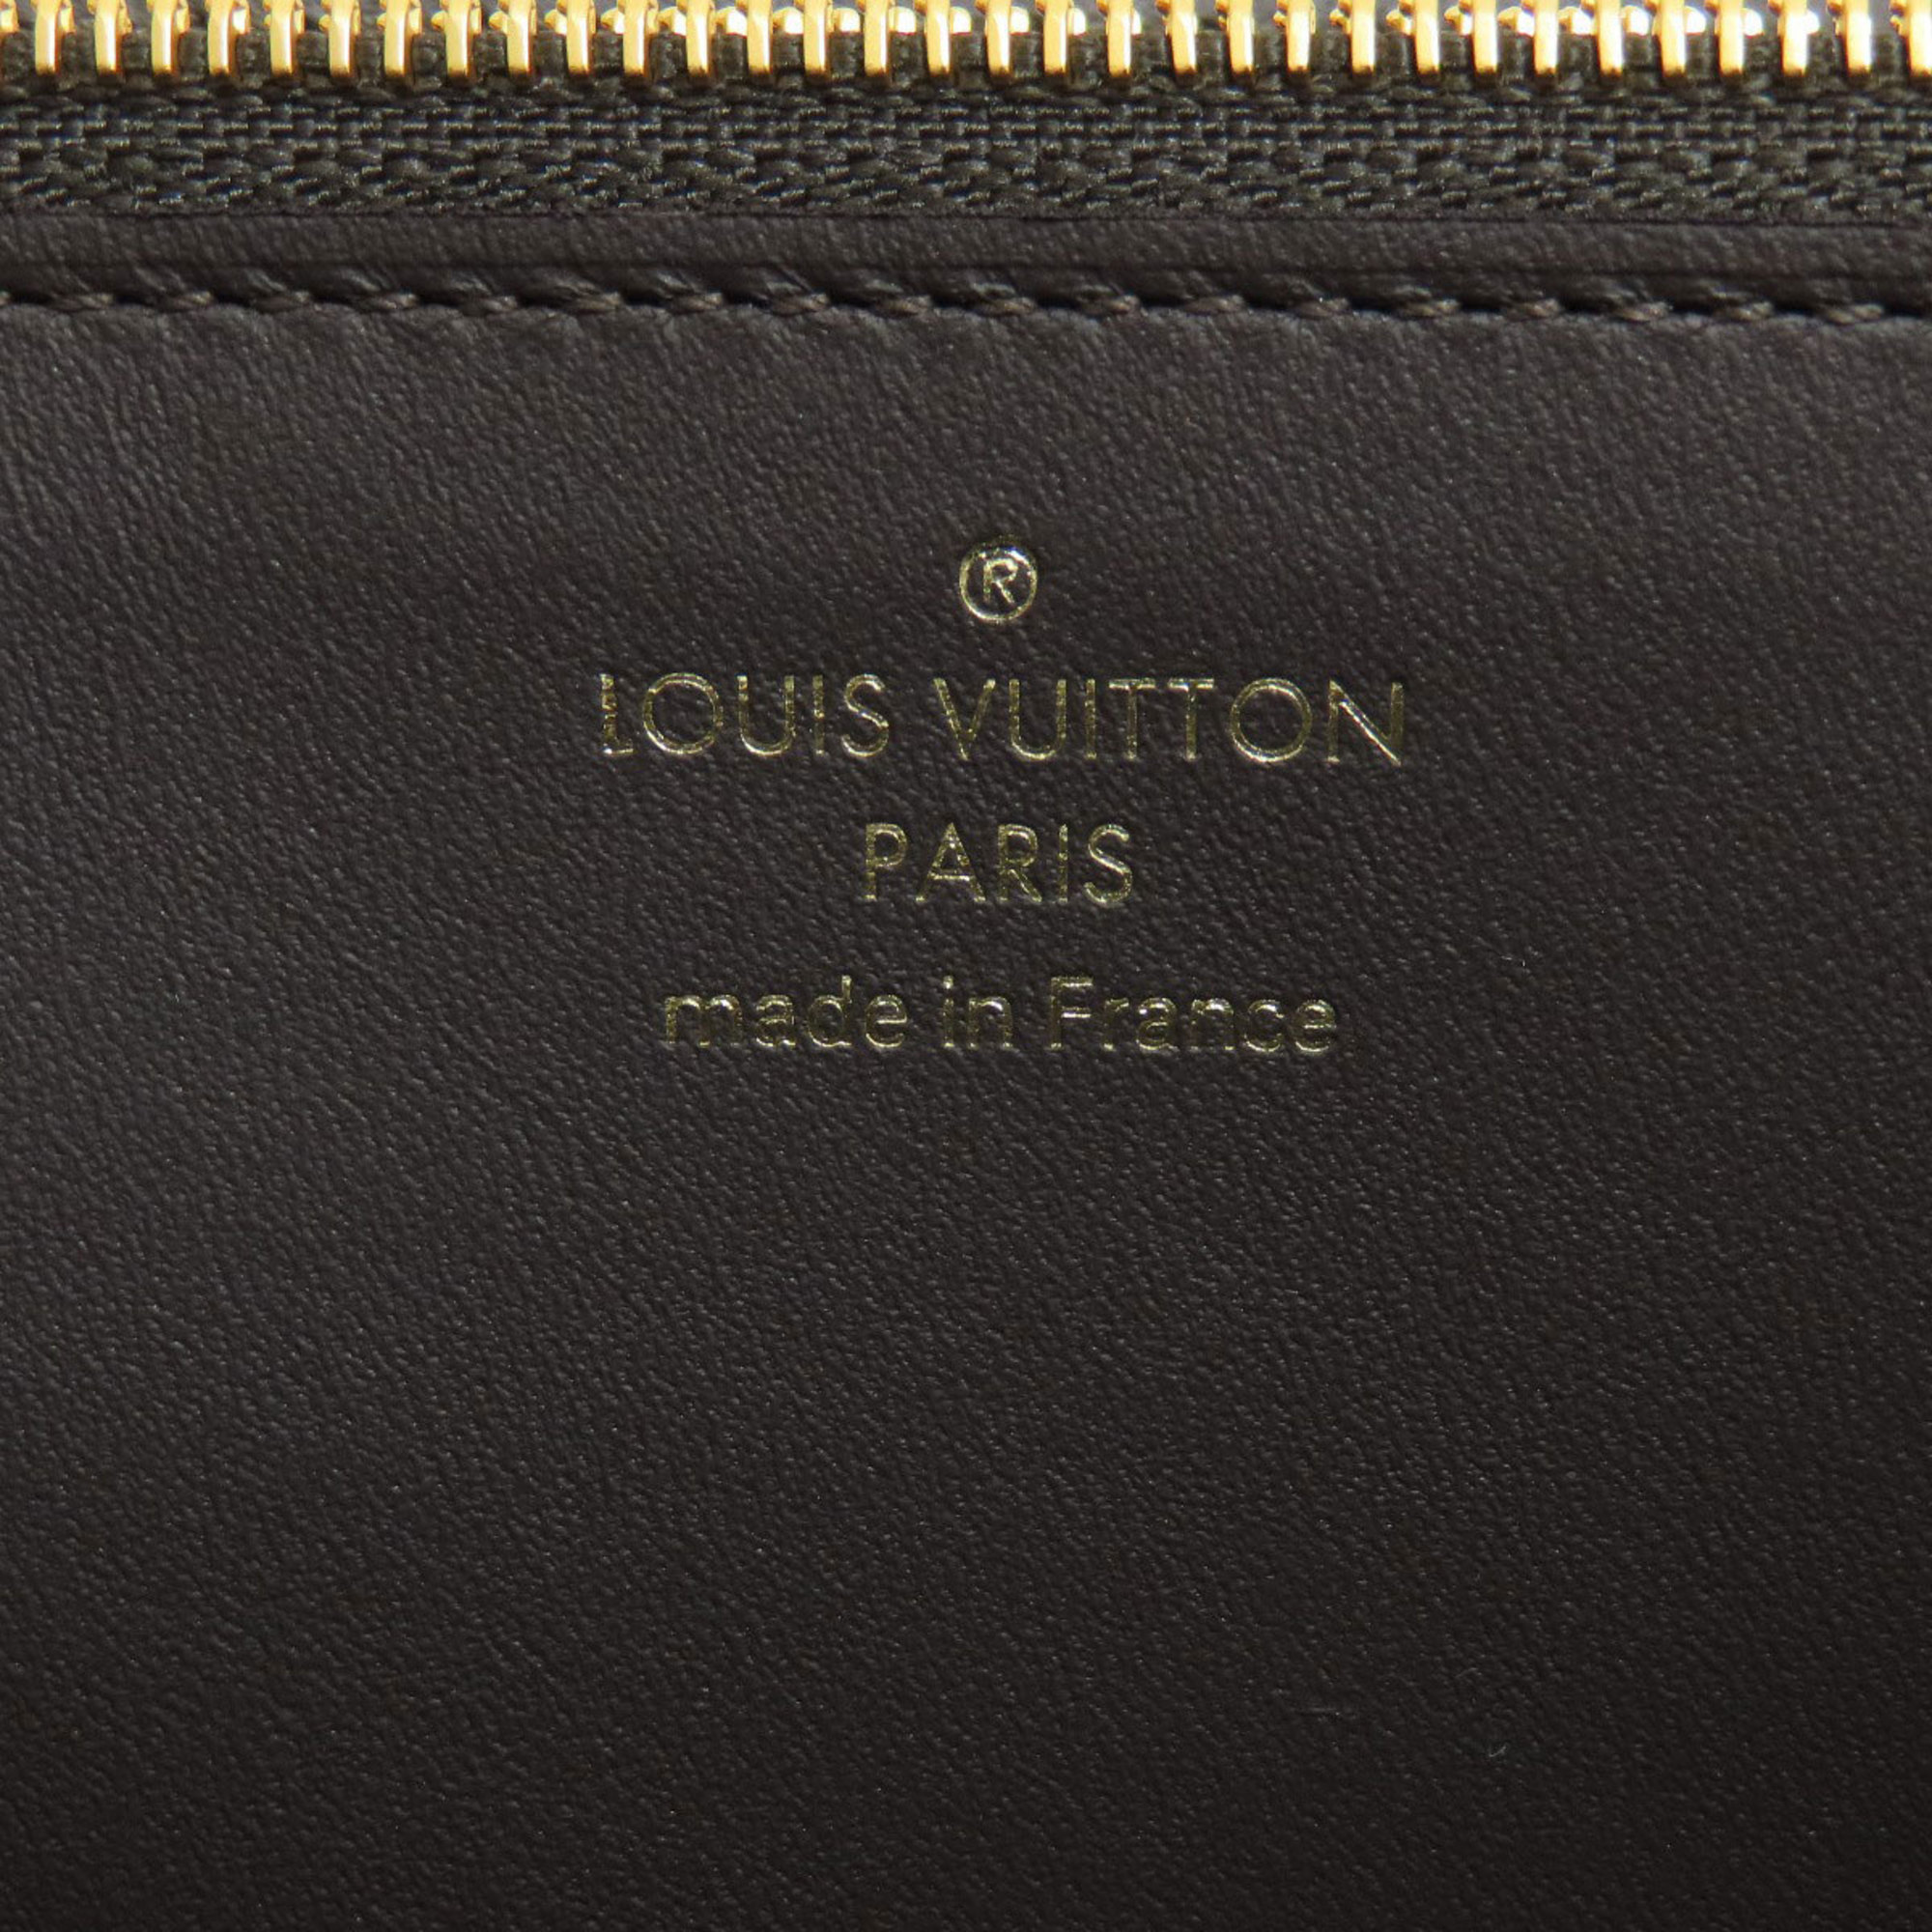 Louis Vuitton M61249 Portefeuille Capucines Gale Long Wallet Taurillon Women's LOUIS VUITTON